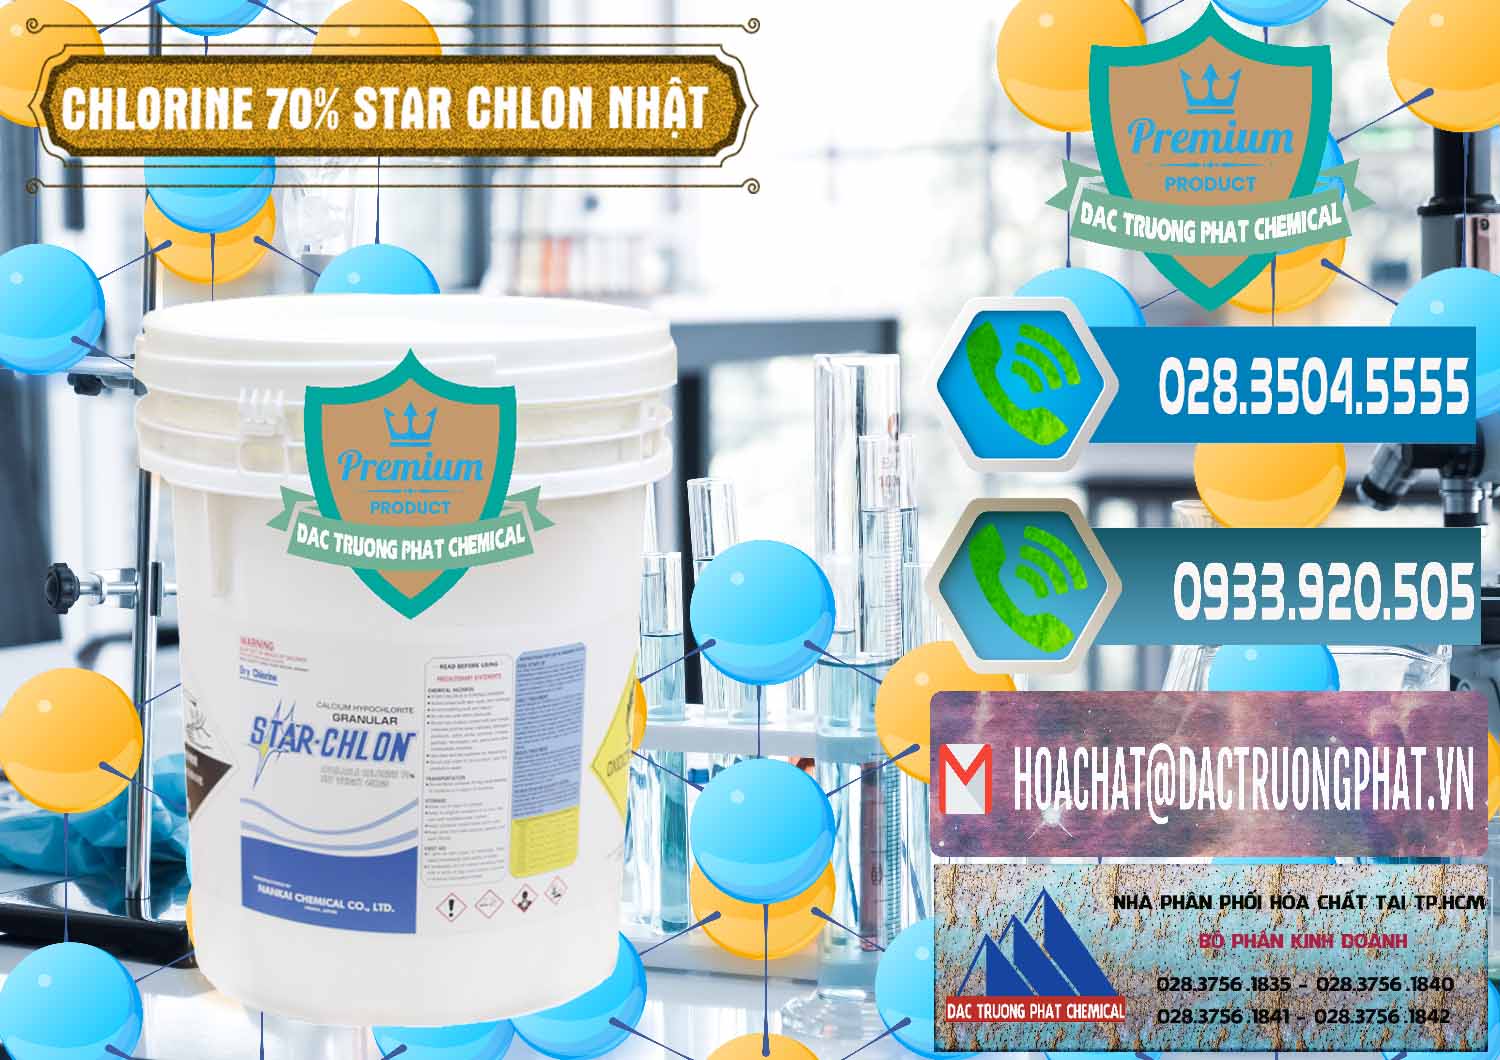 Chuyên bán - phân phối Clorin – Chlorine 70% Star Chlon Nhật Bản Japan - 0243 - Công ty chuyên cung cấp và bán hóa chất tại TP.HCM - congtyhoachat.net